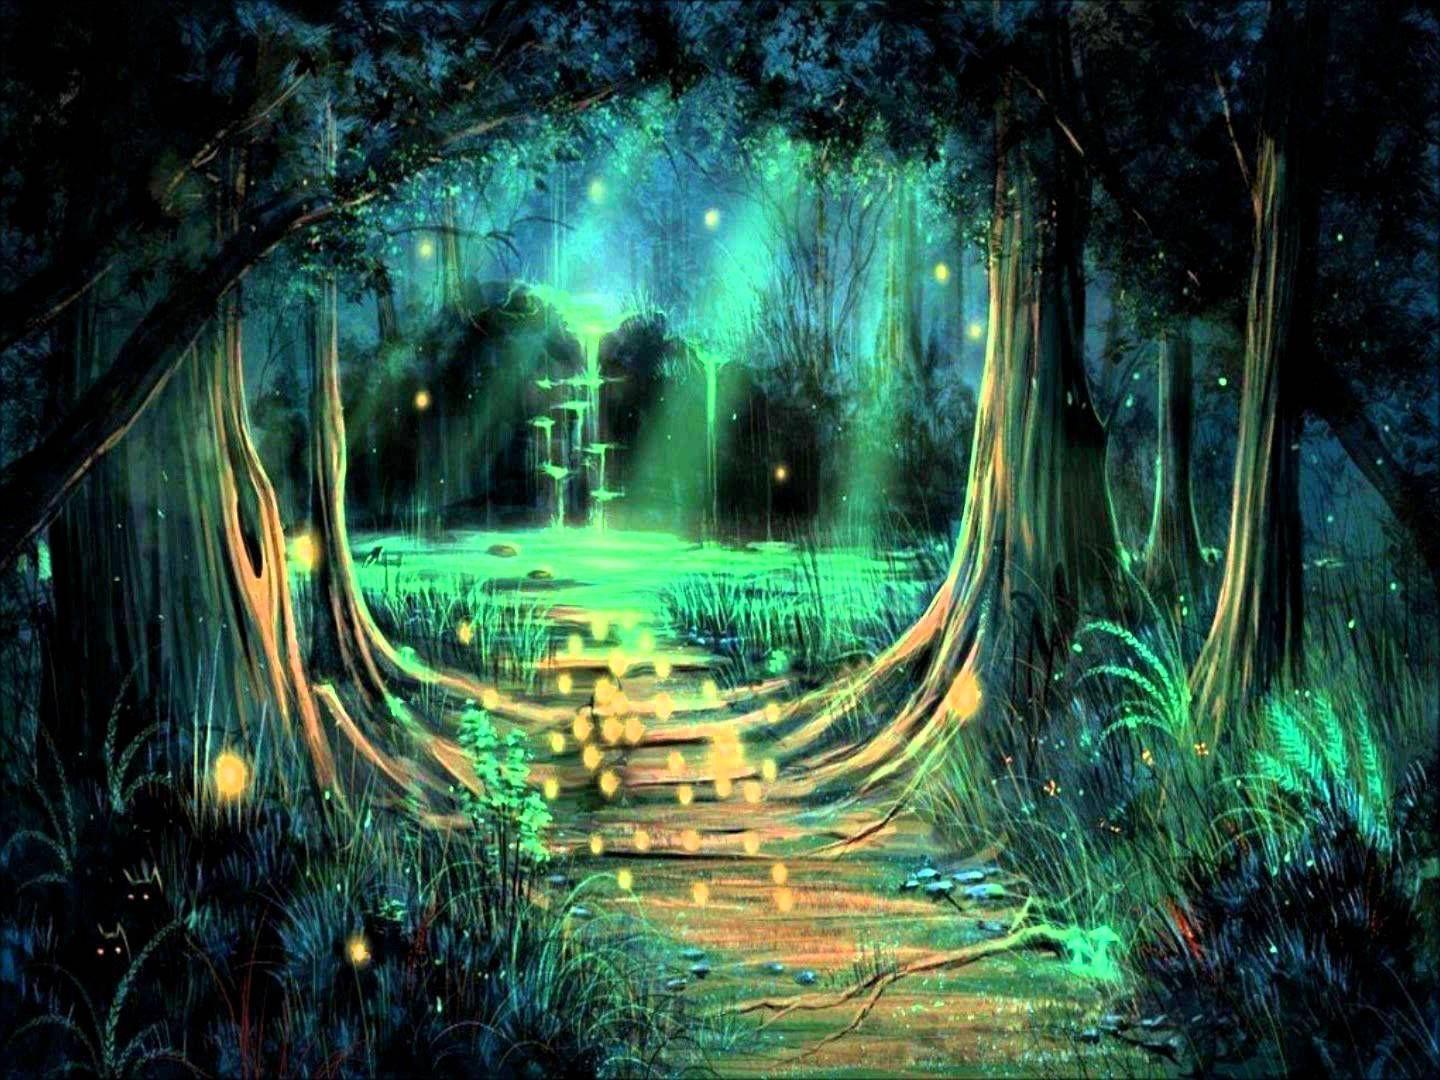 1440 x 1080 · jpeg - Afbeeldingsresultaat voor forest fairytale | Forest wallpaper ...